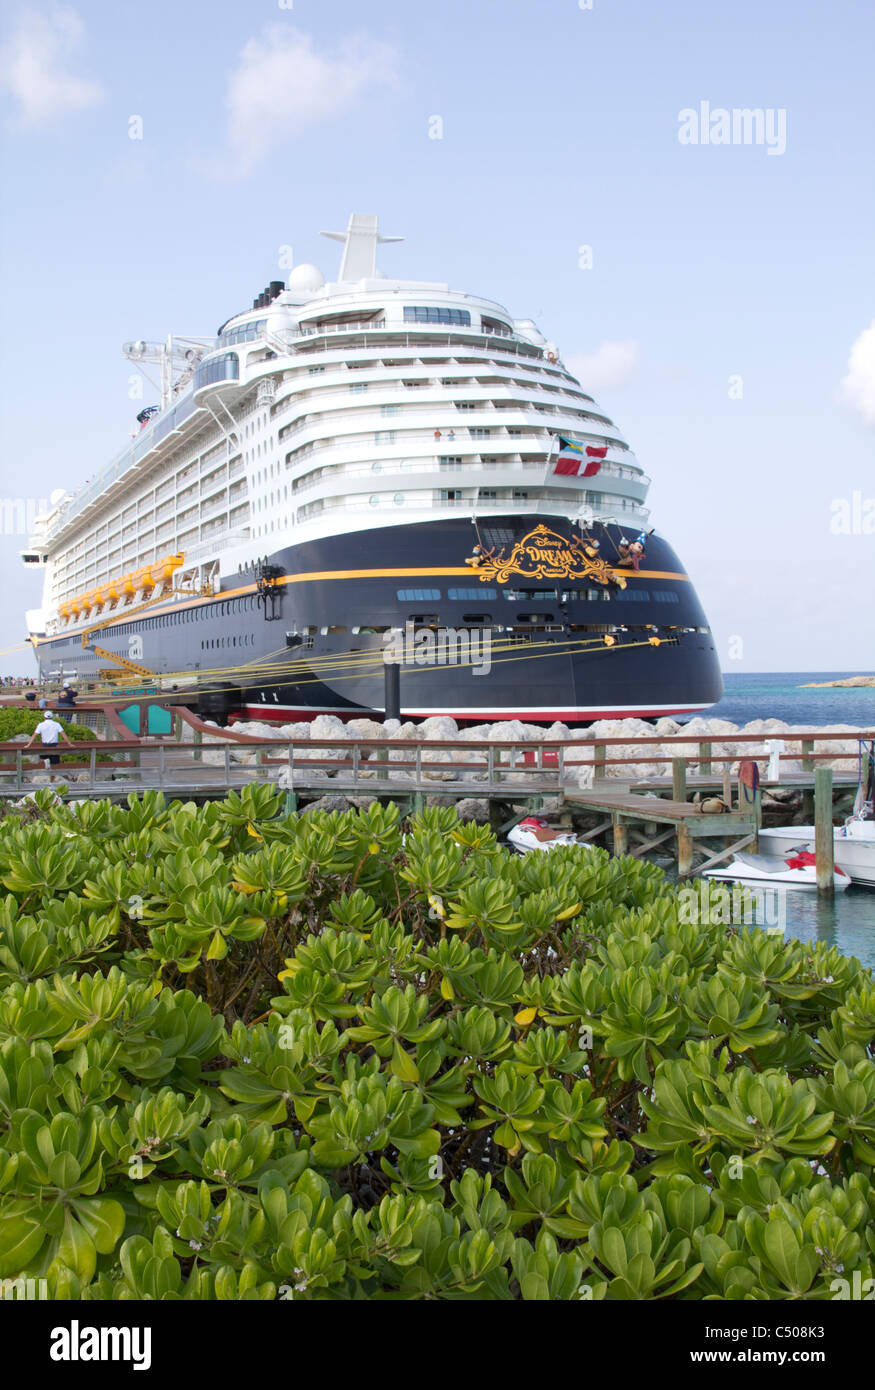 Disney Dream cruise ship, Castaway Cay, Bahamas Stock Photo